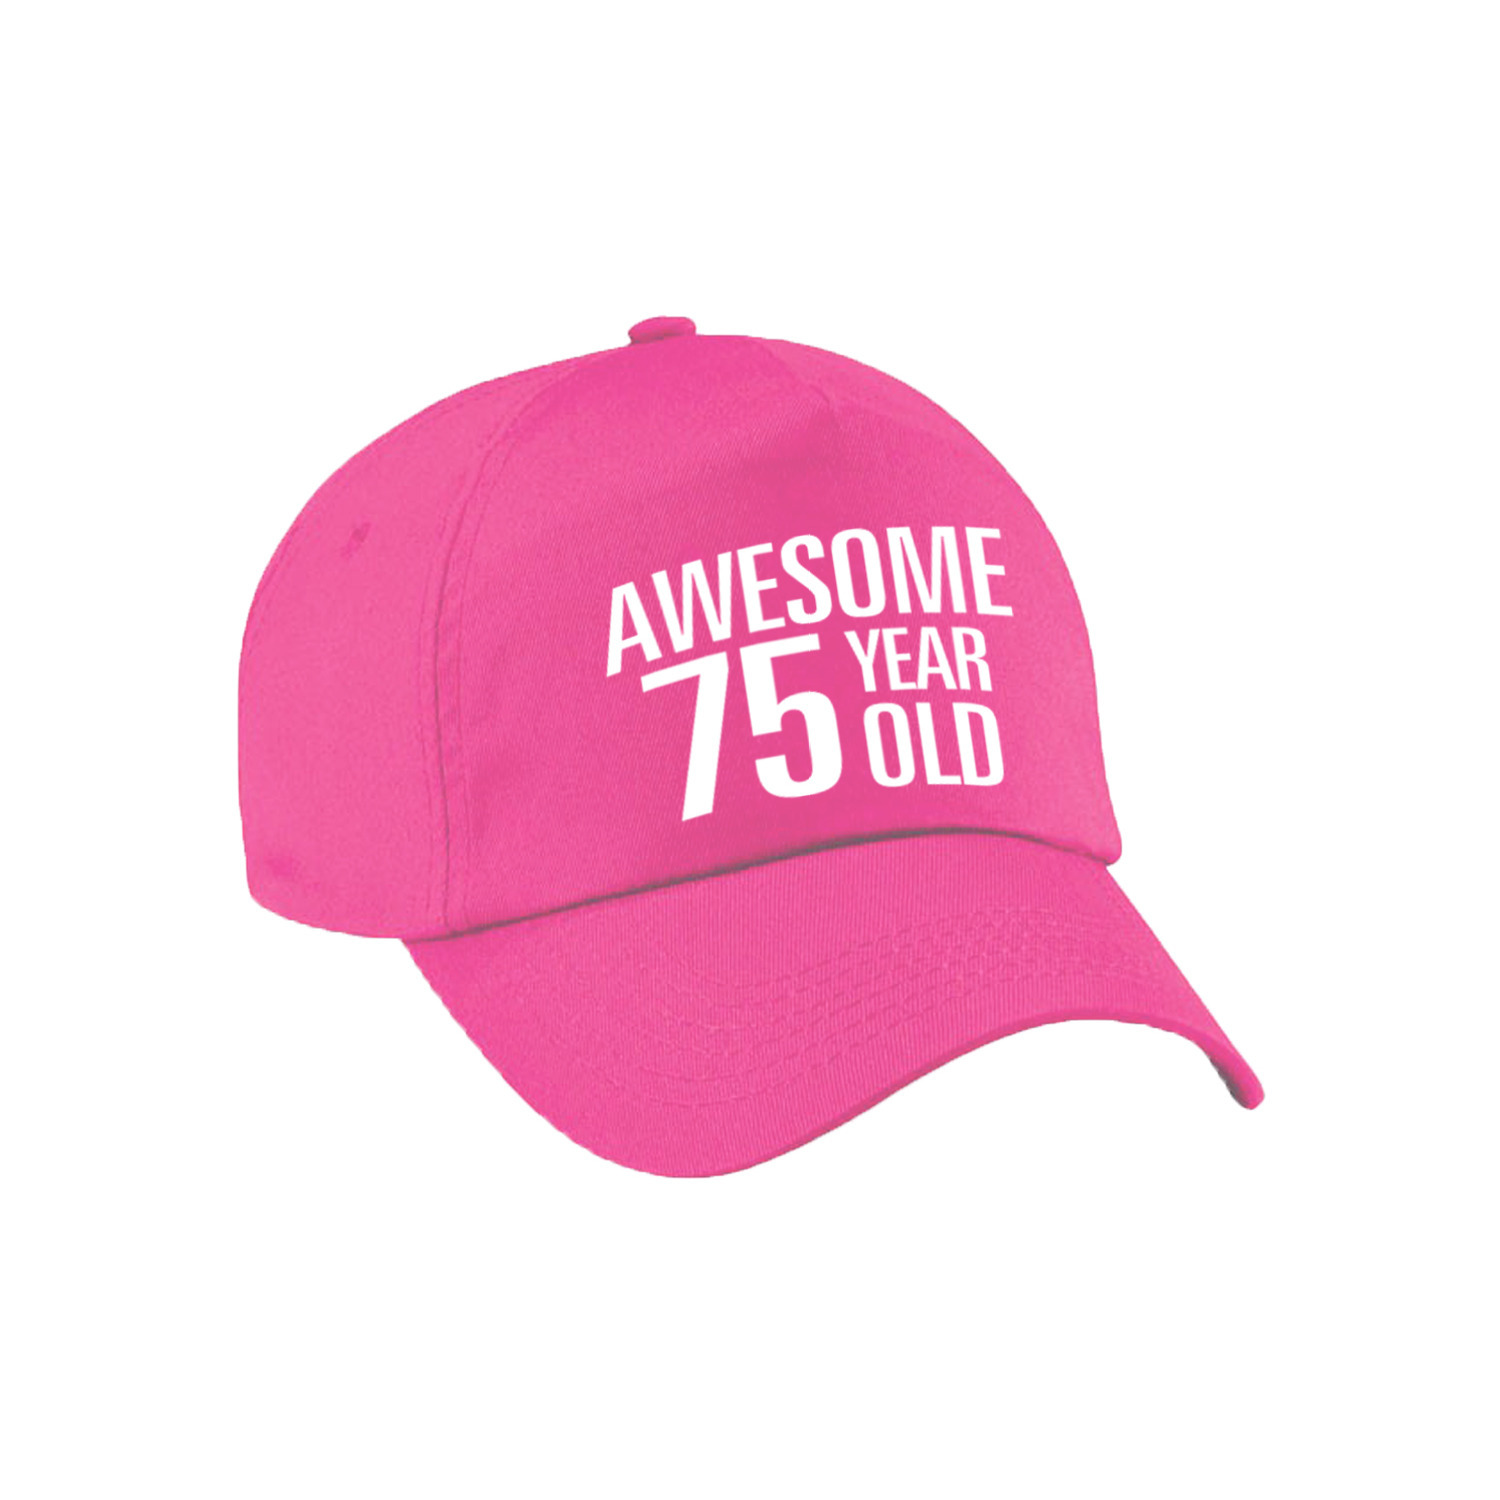 Awesome 75 year old verjaardag pet-cap roze voor dames en heren